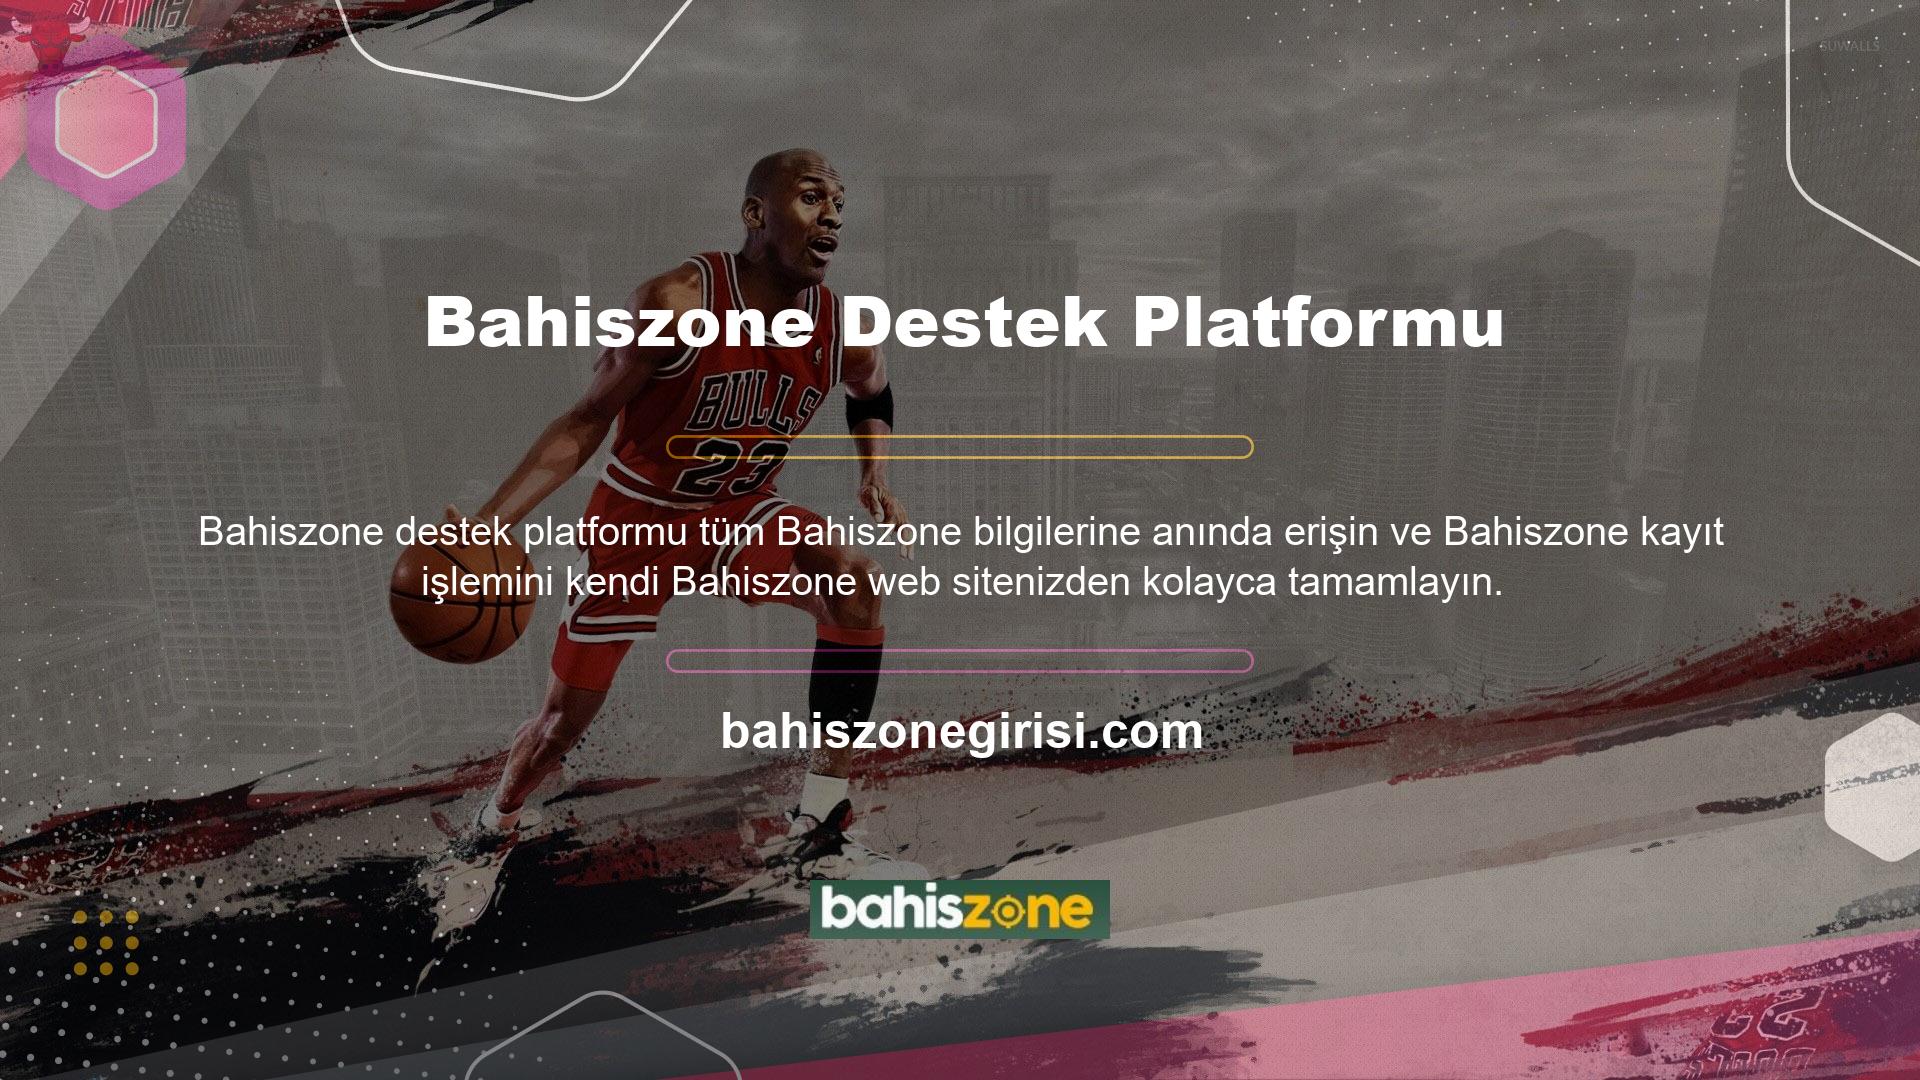 Bahiszone Destek Platformu, casino endüstrisine yönelik canlı bir bahis platformu, web sitesi ve casinodur